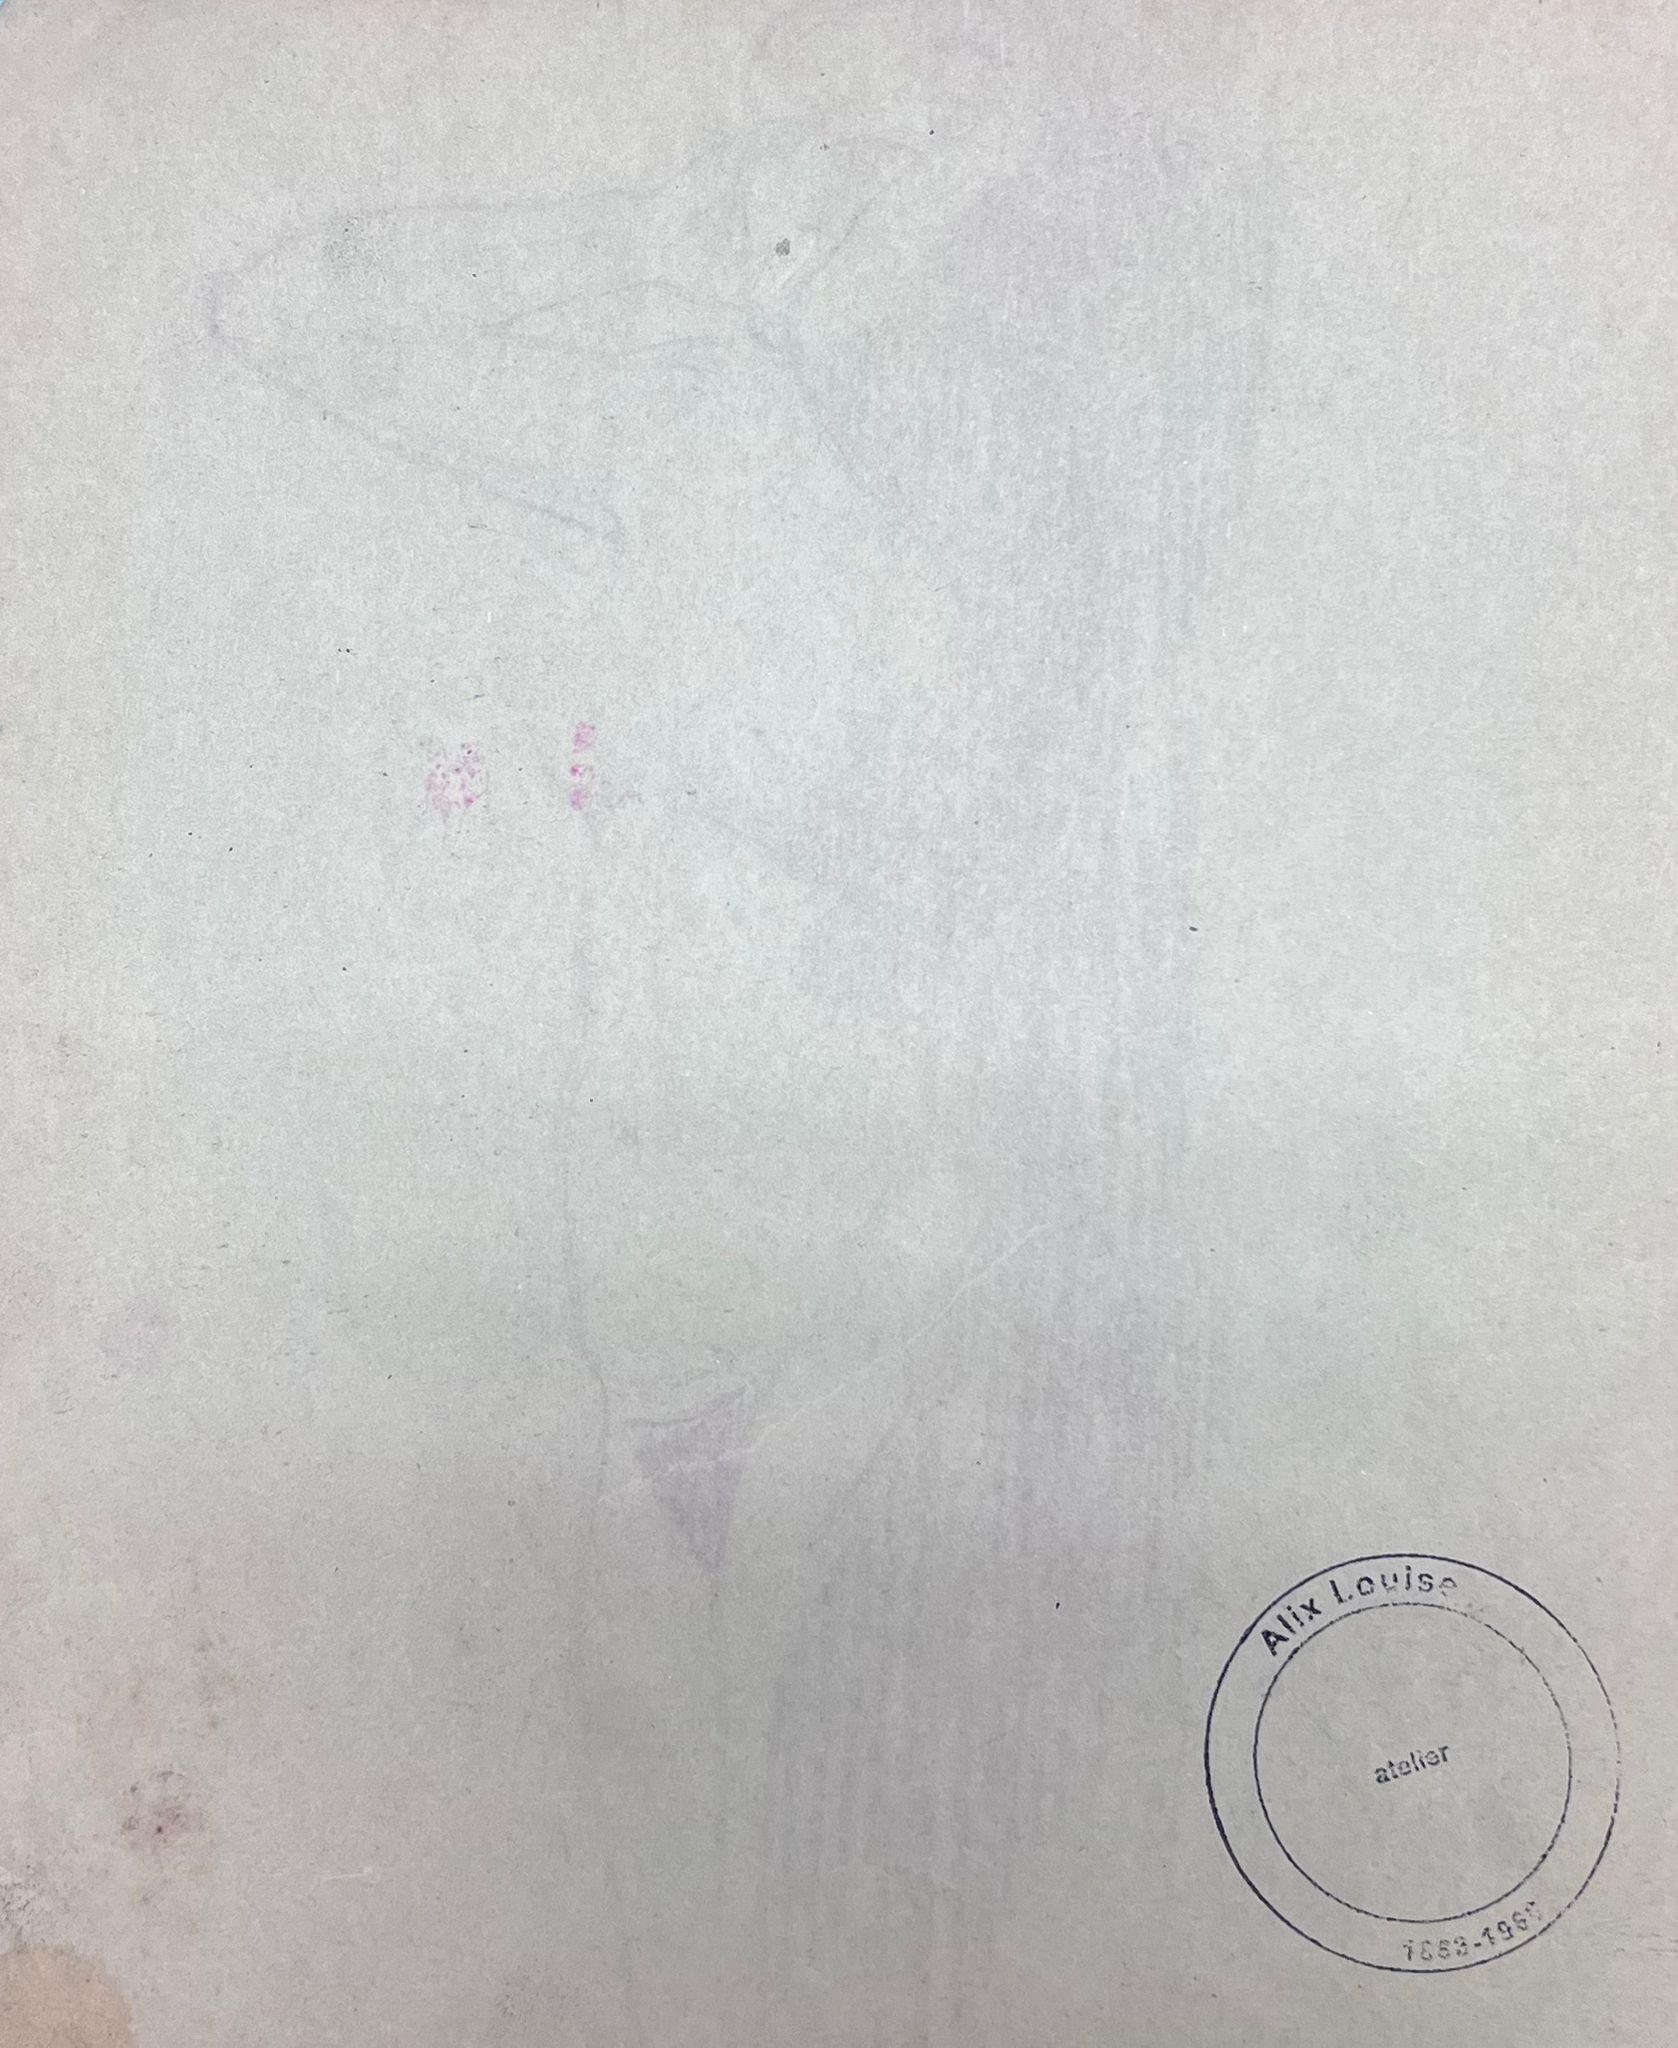 Femme nue
de Louise Alix (française, 1888-1980) *voir notes ci-dessous
cachet de provenance au dos 
dessin au crayon sur papier d'artiste, non encadré
mesure : 10 pouces de haut par 8 pouces de large
état : globalement très bon et sain, quelques